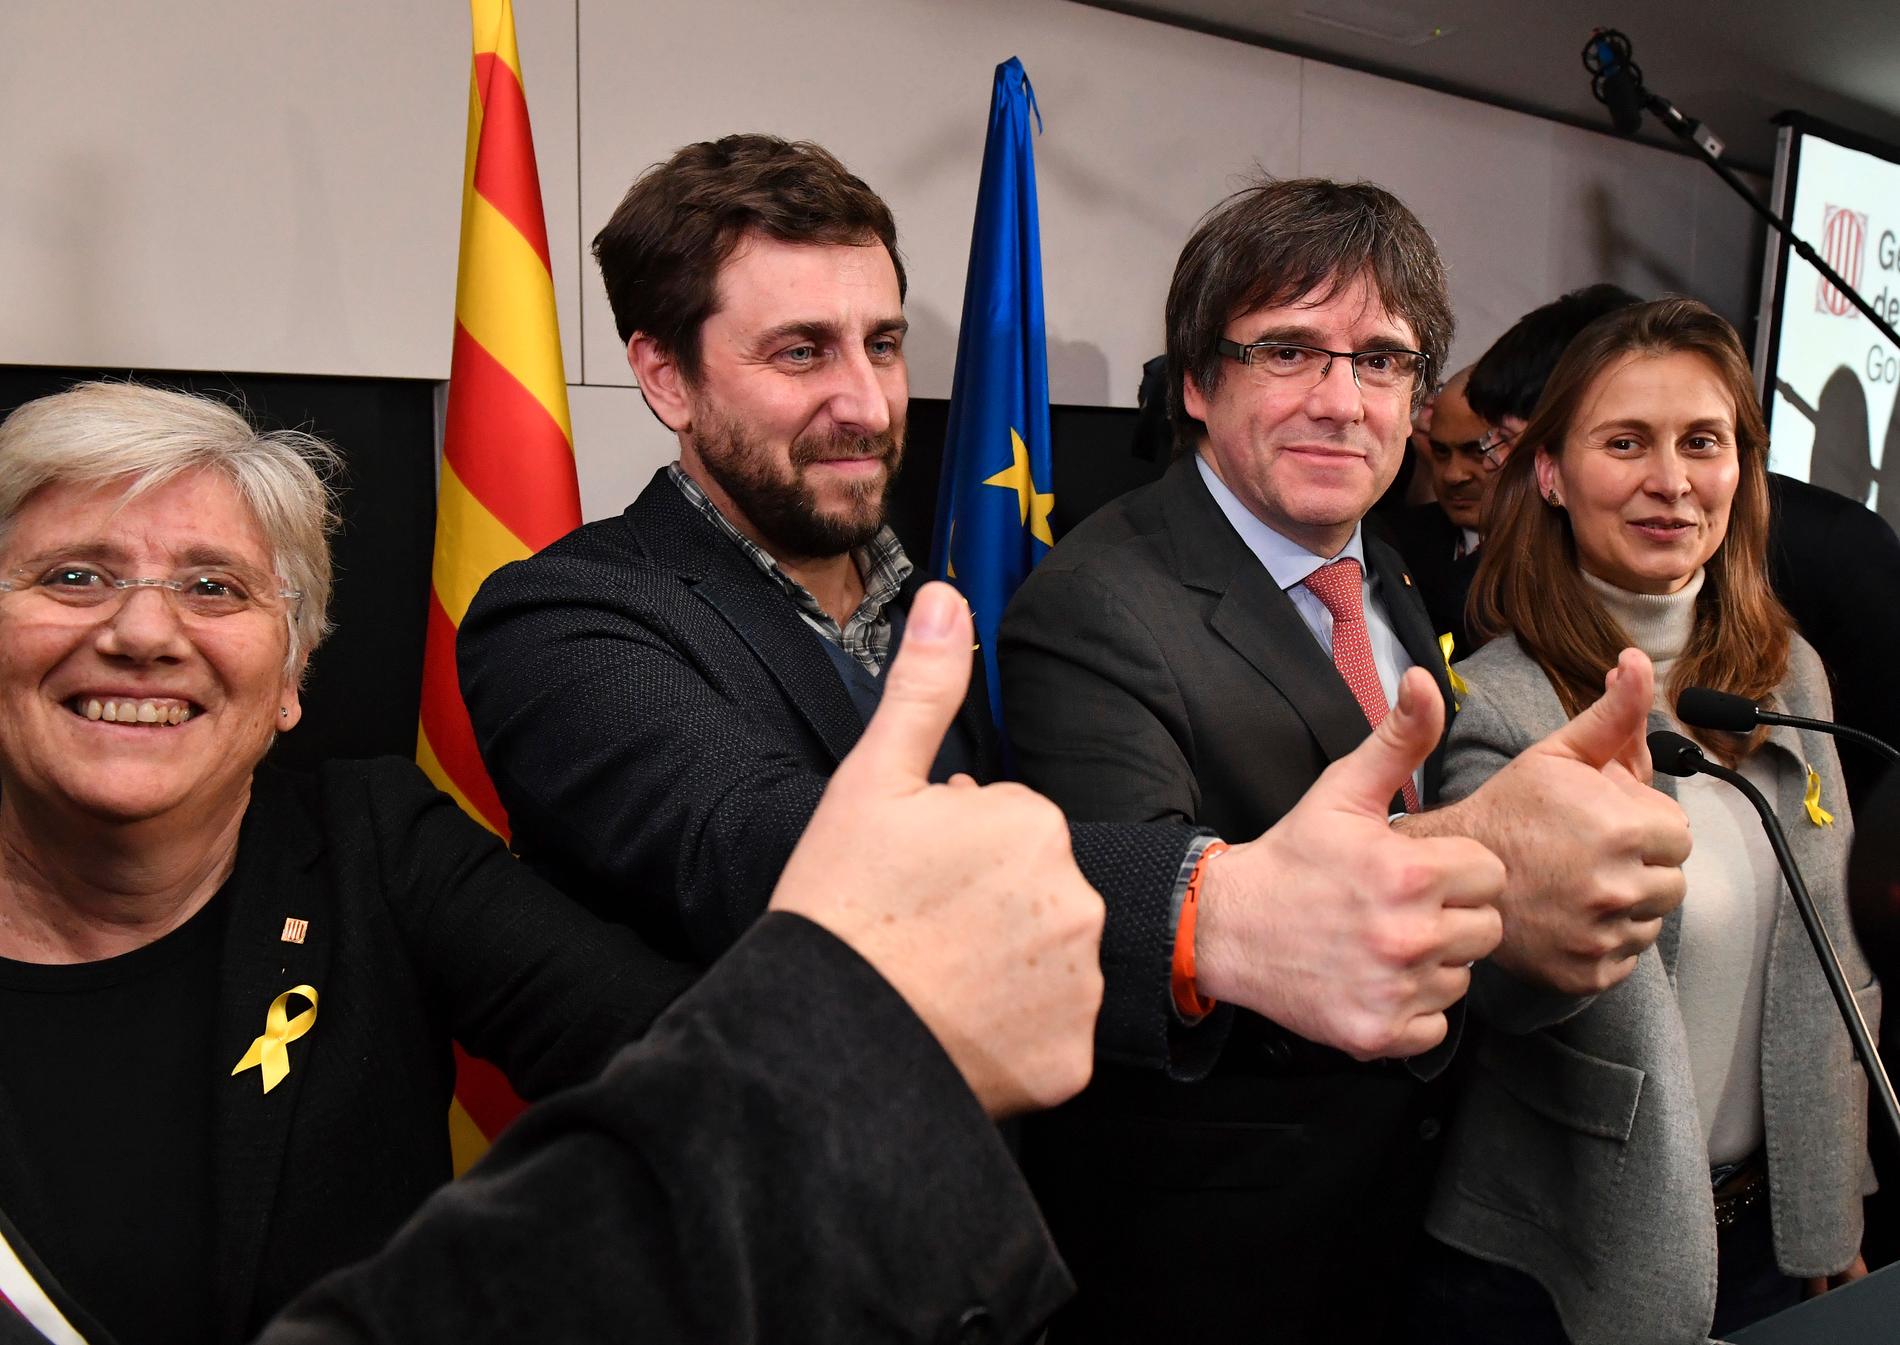 Carles Puigdemont tillsammans med partikollegor på plats i Bryssel.